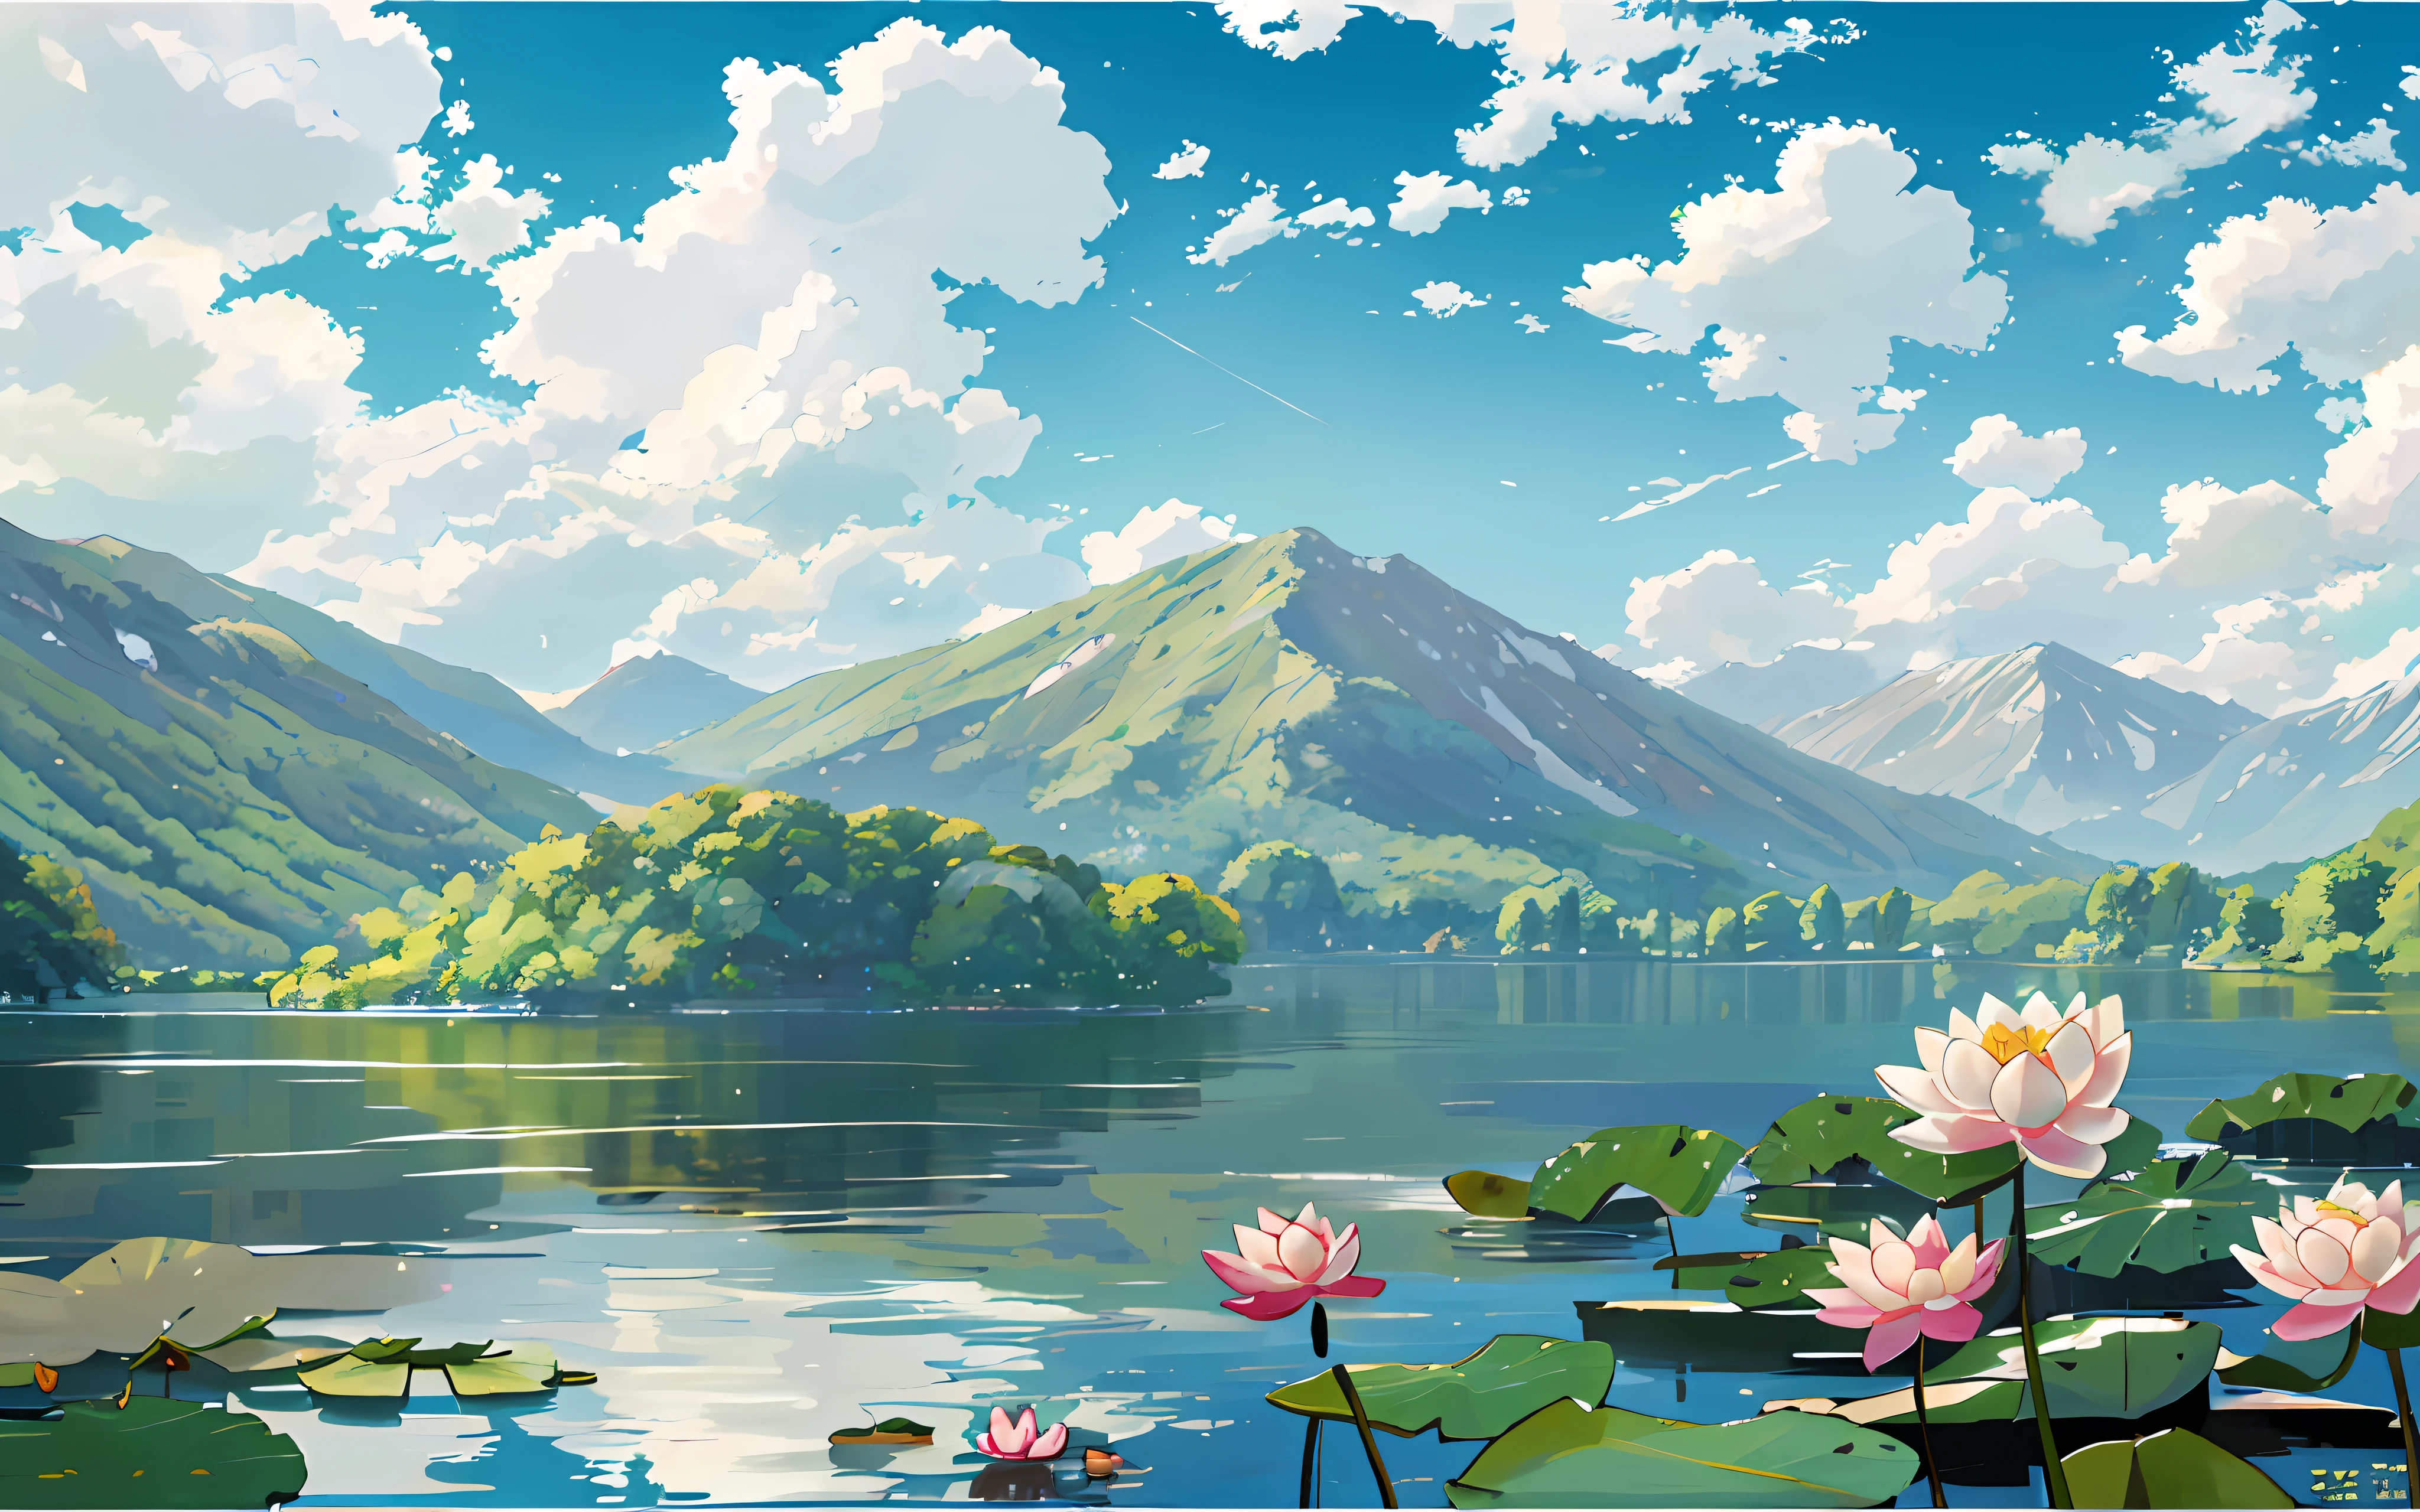 手前には湖, そこには [白] 湖の睡蓮と蓮の葉, 緑の山々, blue sky and 白 clouds, ジープリースタイル, 二次元, セルロイド, 図, 自然の風景, 風, 夏, 明るい色調, 日光